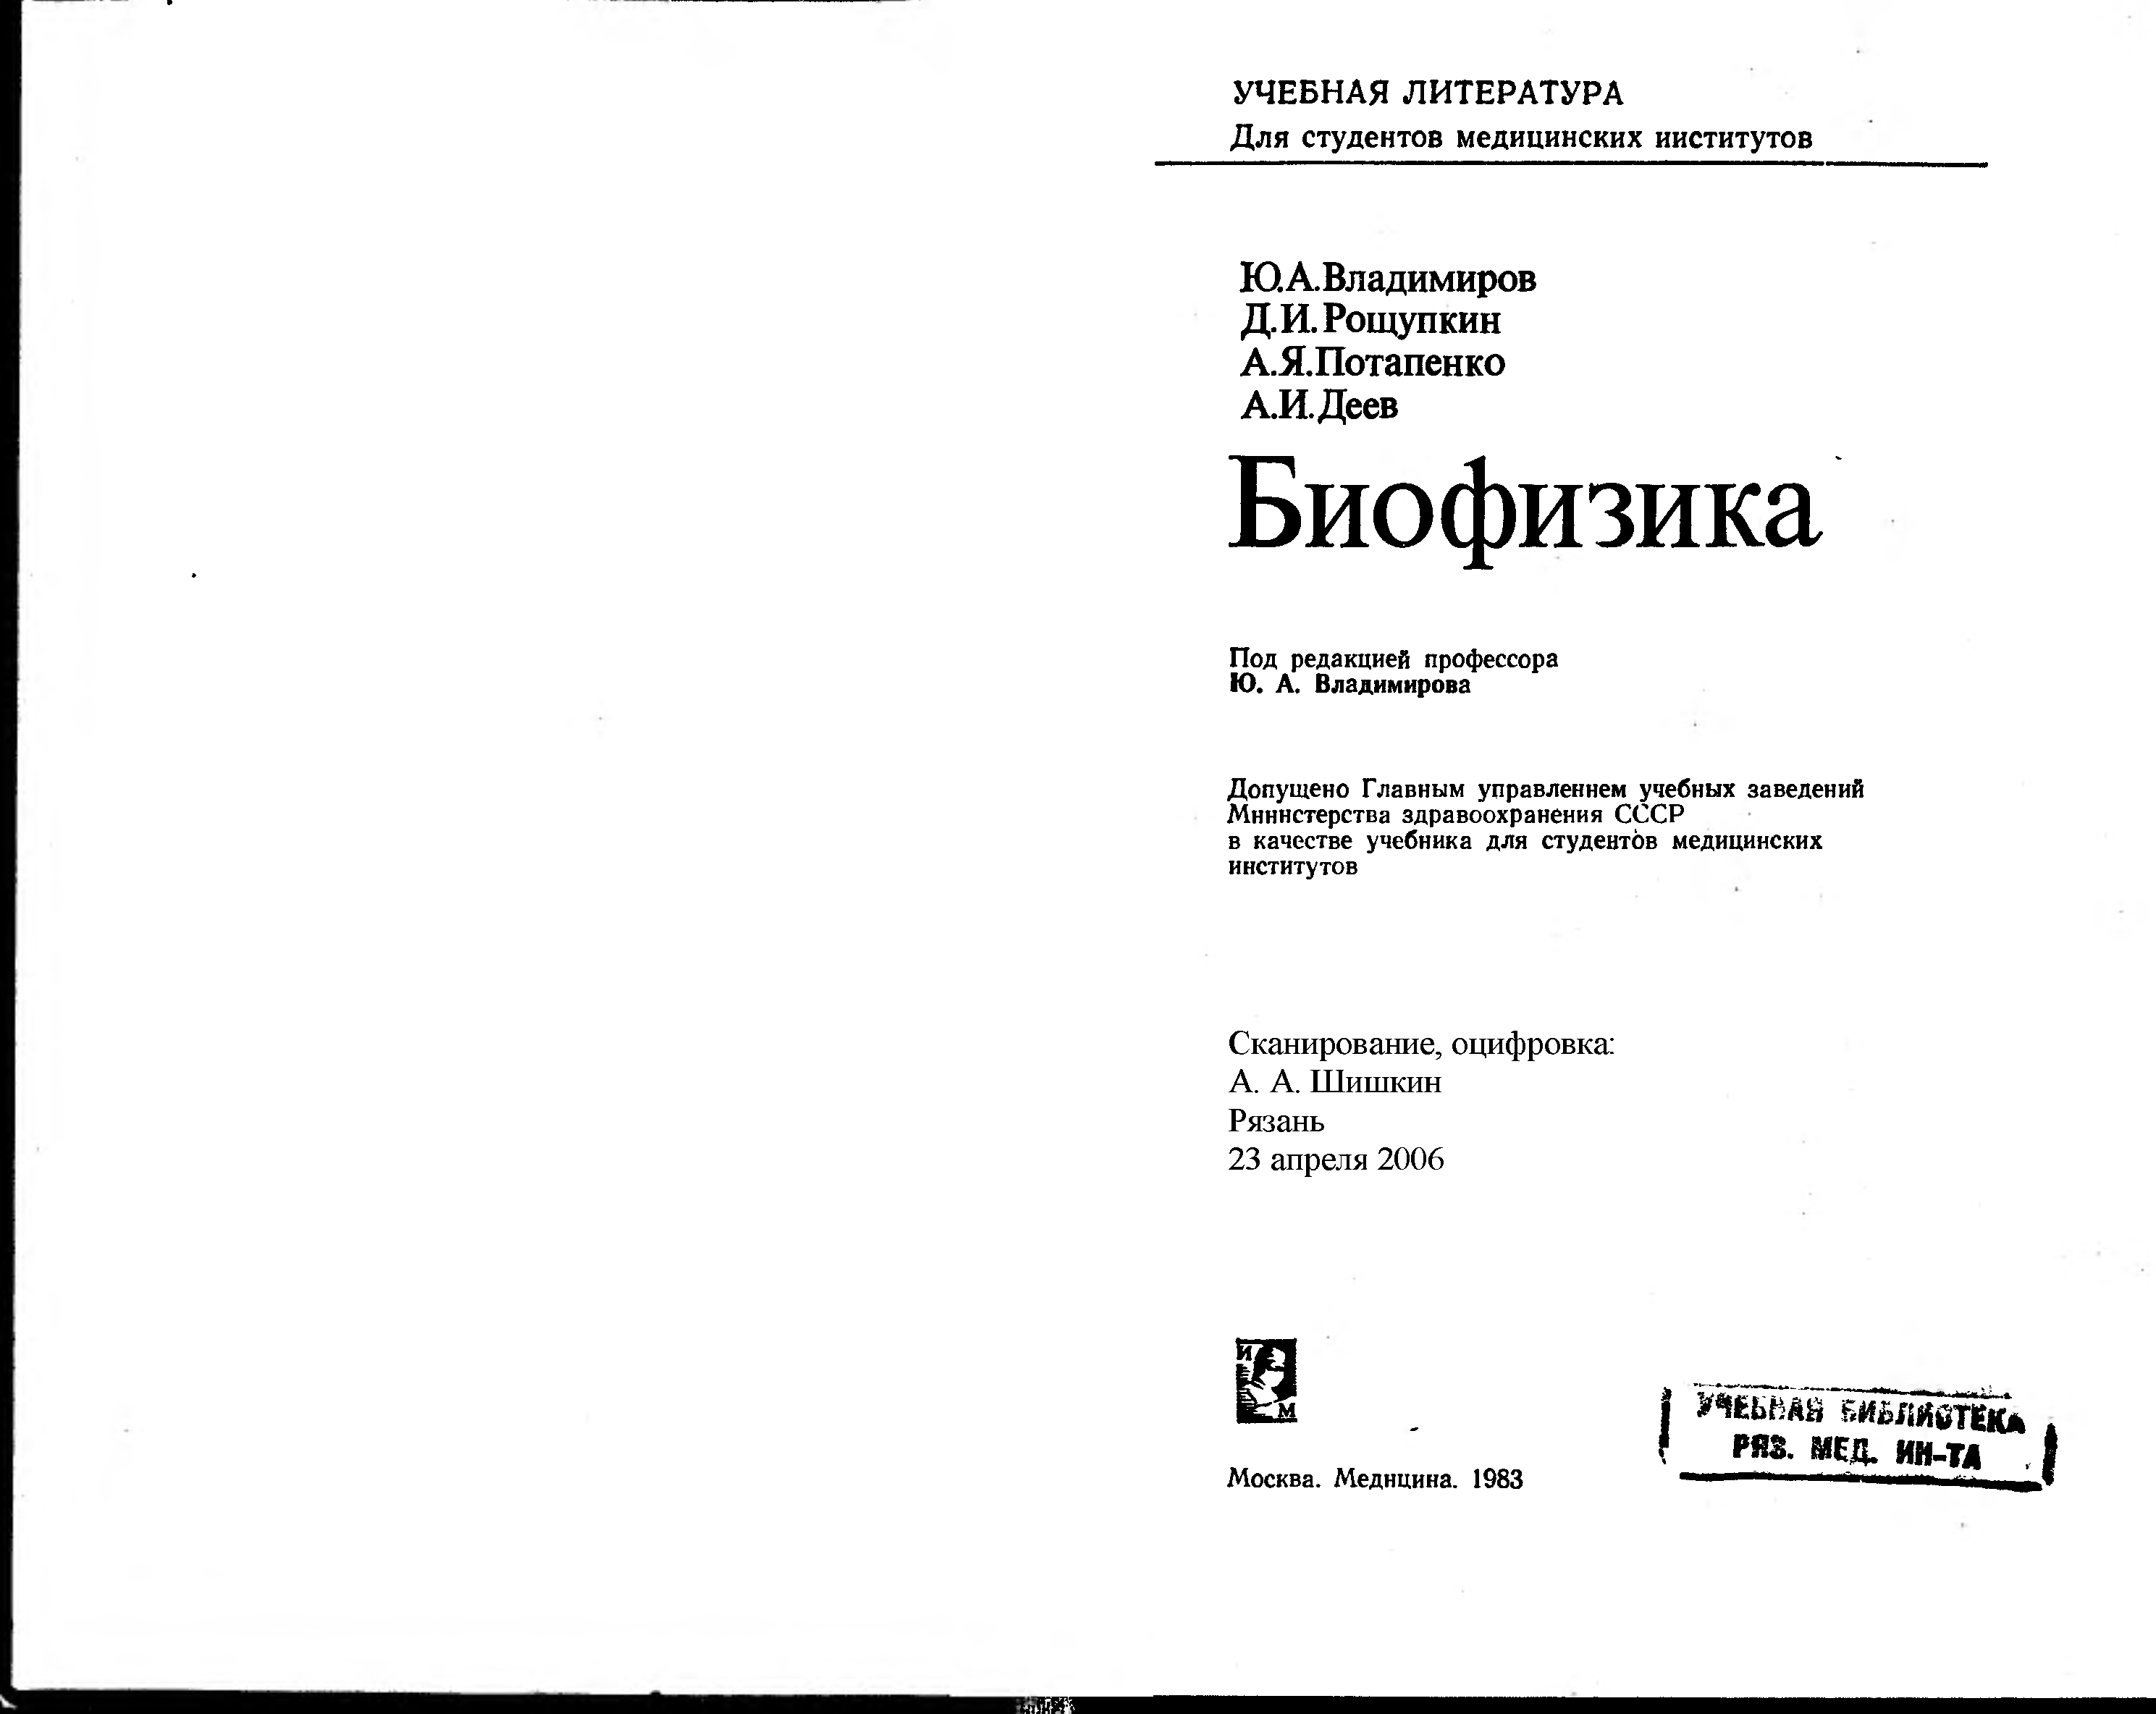 Биофизика журнал. Владимиров ю.а биофизика. Биофизика Владимиров 1983. Учебник биофизика Владимиров.